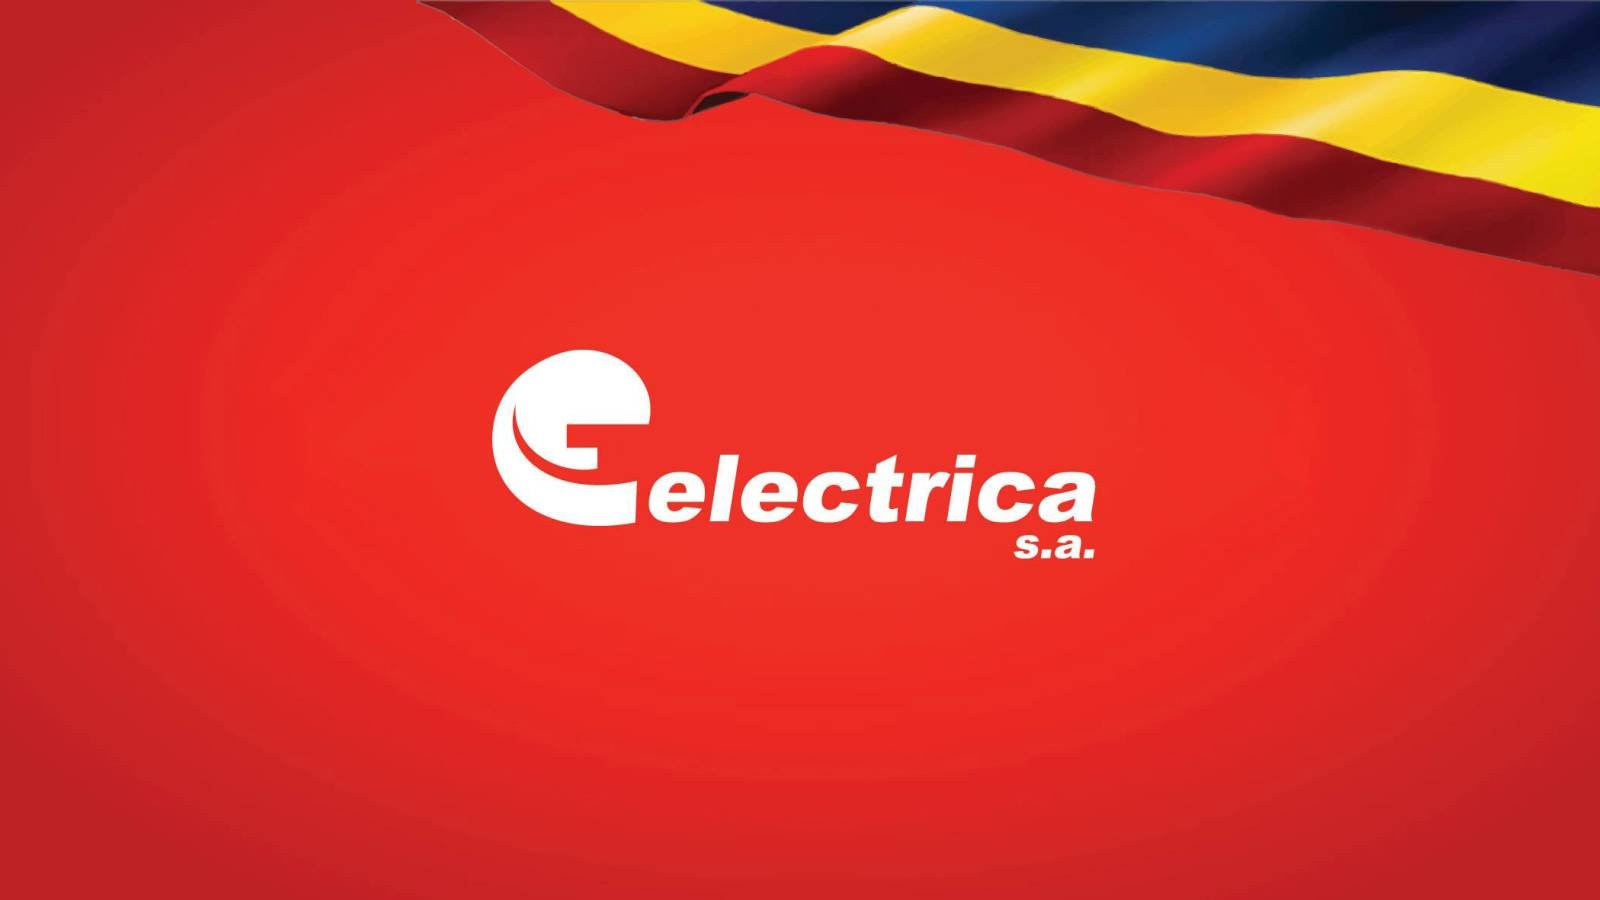 Medidas IMPORTANTES EN ELECTRICIDAD Aplicación MILLONES de Clientes Rumania